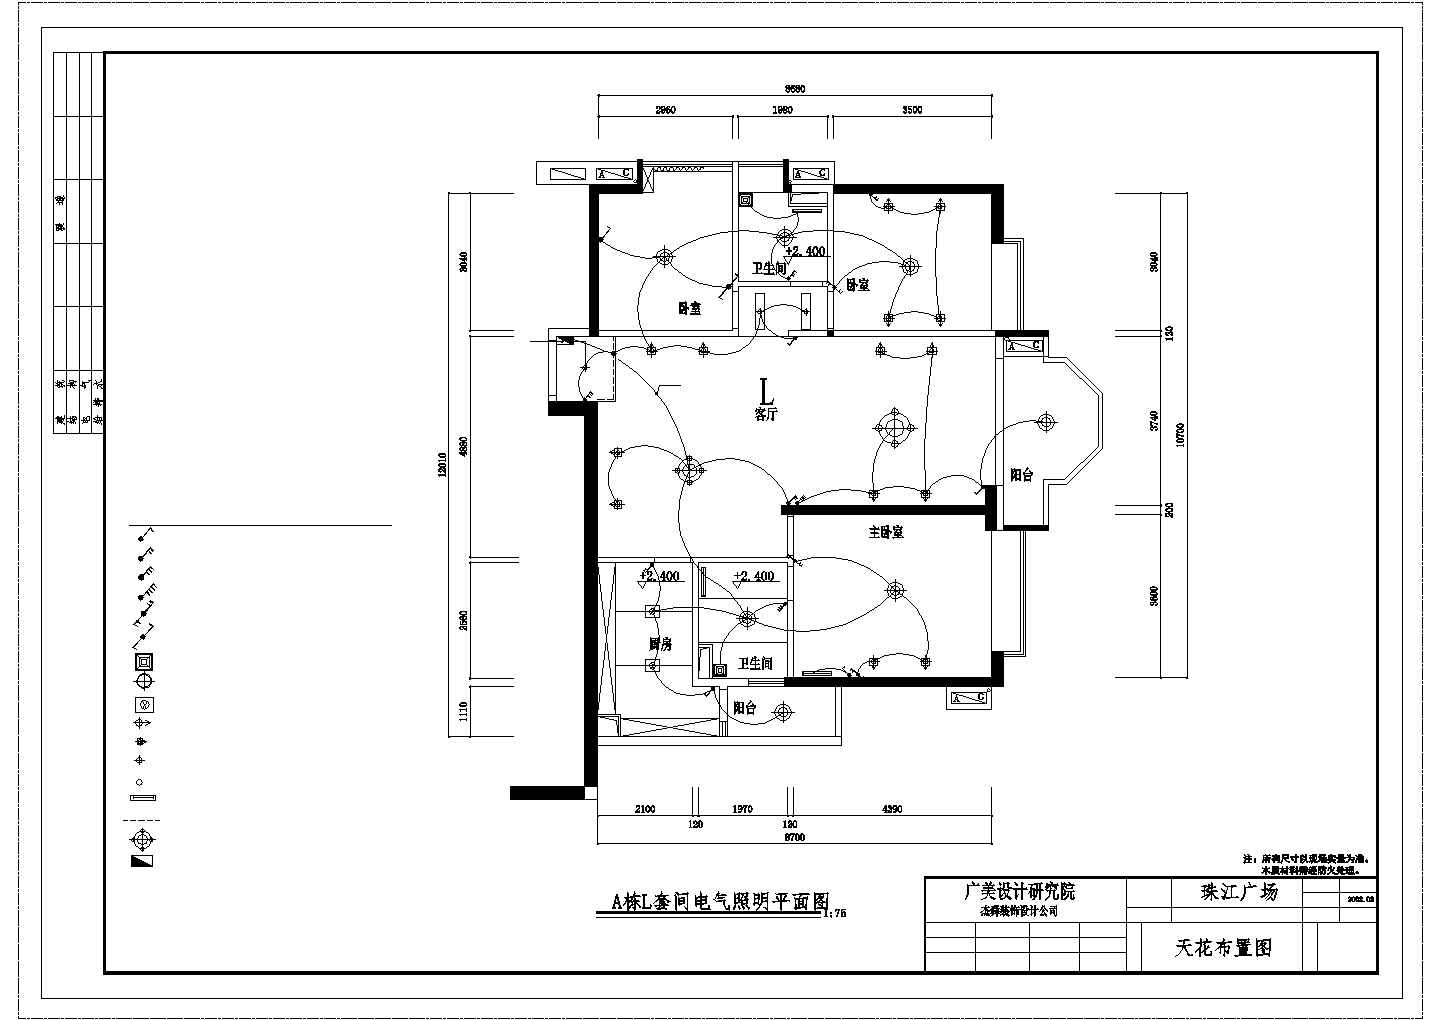 珠江广场A栋L型住宅室内装修施工图